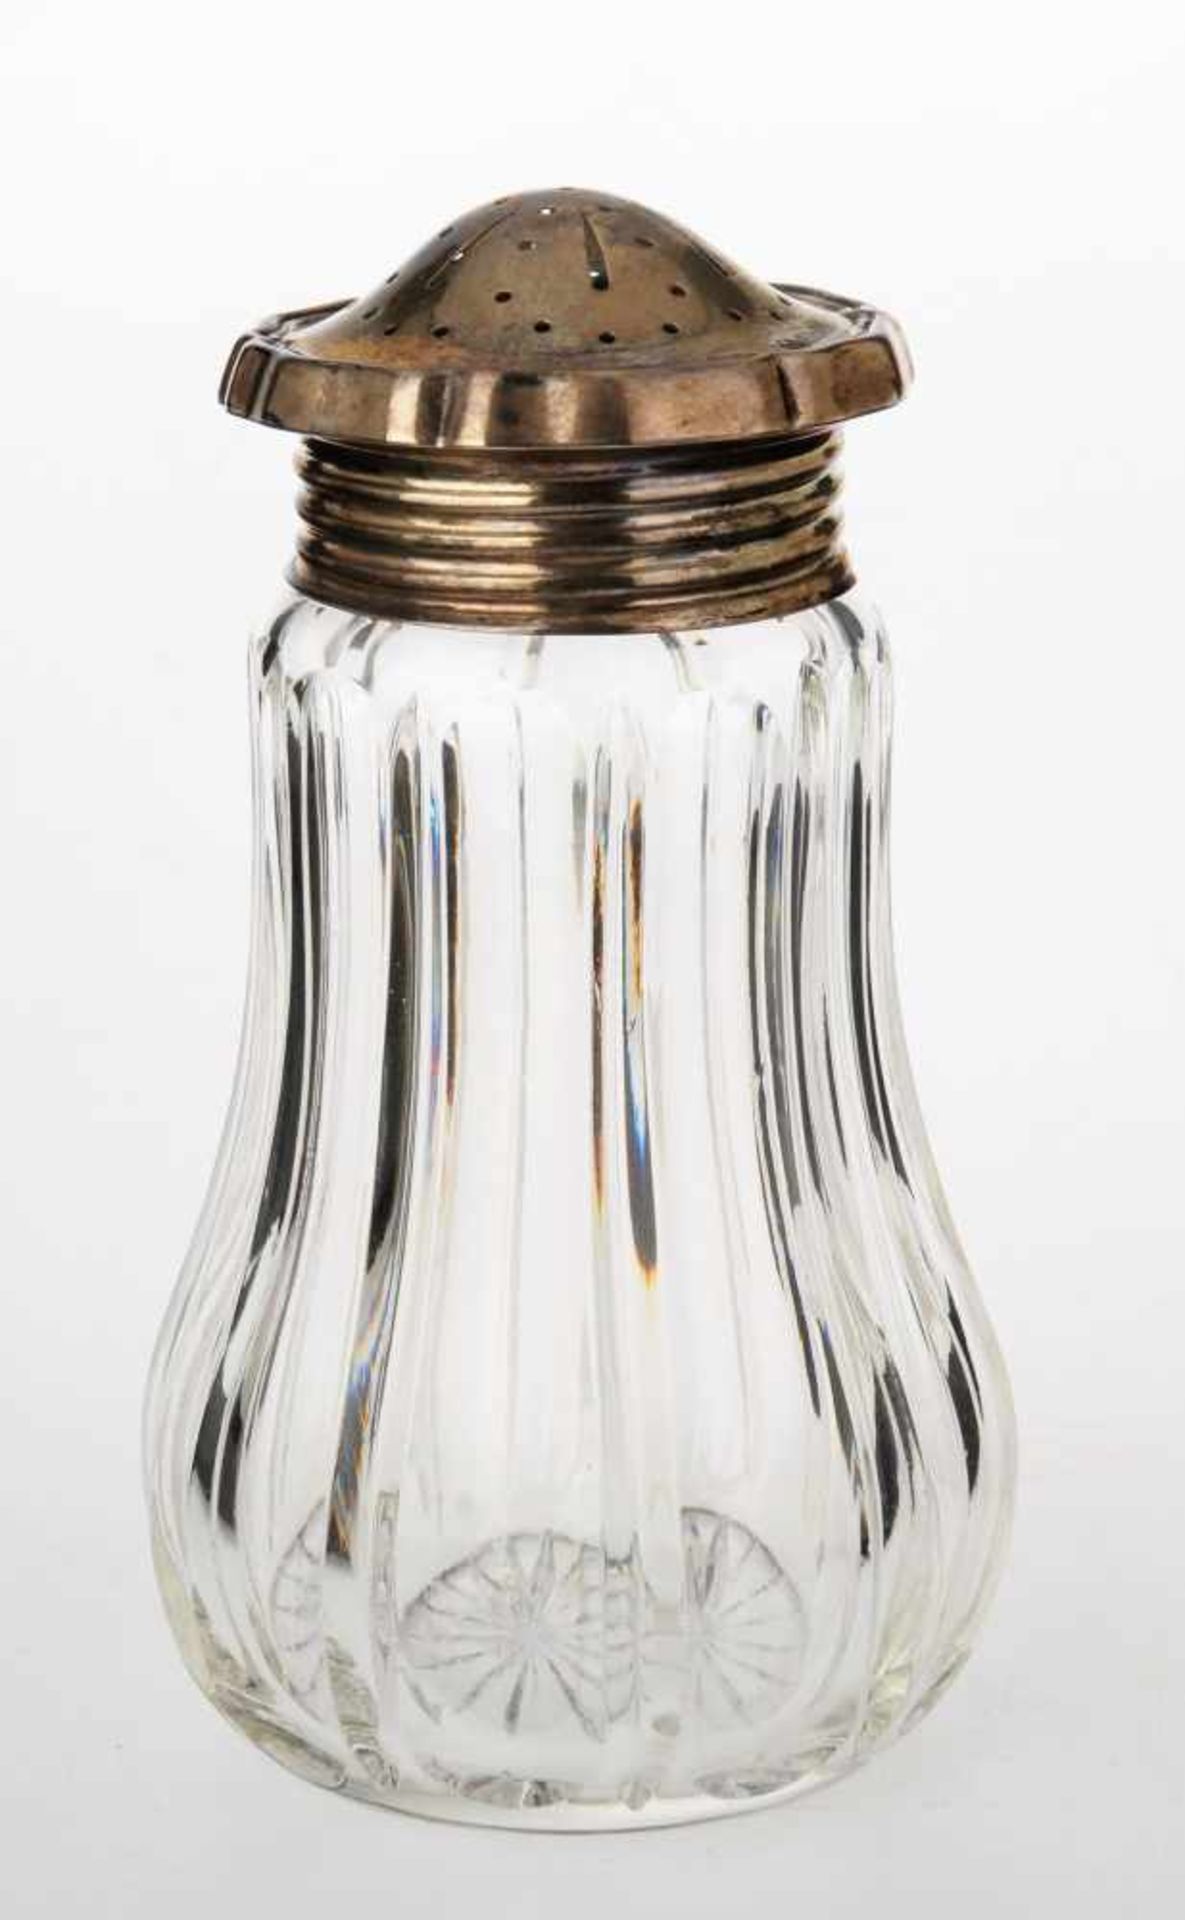 ZuckerstreuerBirnförmiger Behälter aus farblosem Kristallglas mit Schliffdekor. Gerundeter